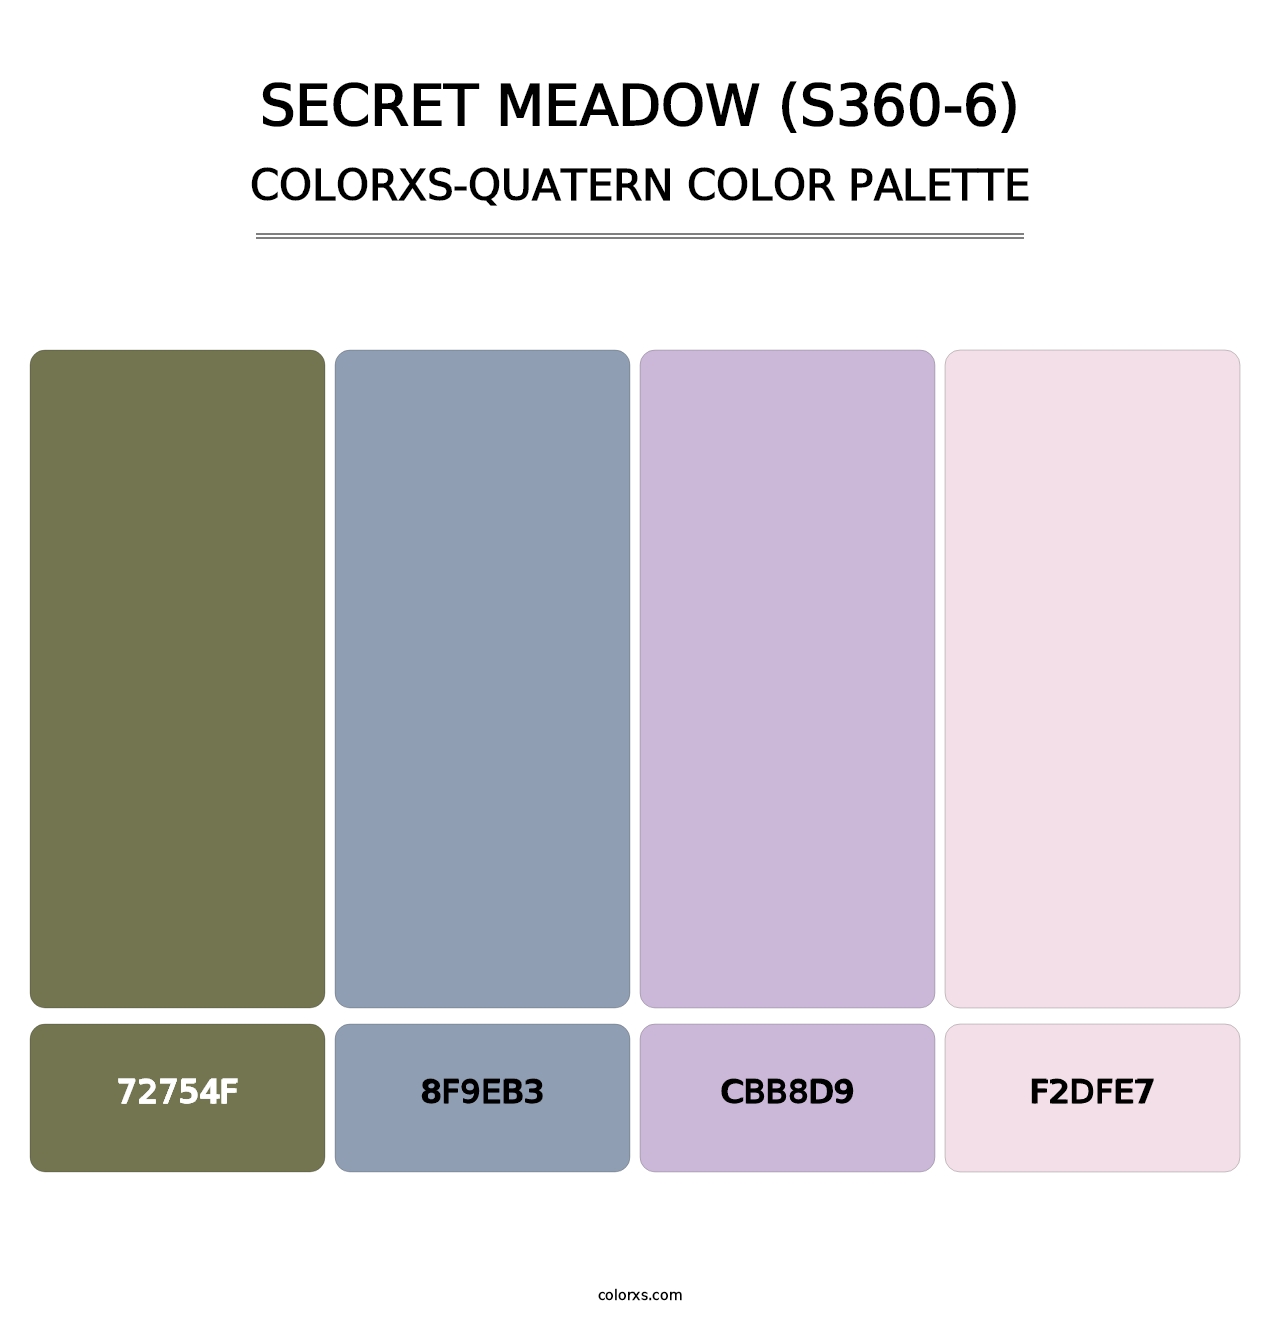 Secret Meadow (S360-6) - Colorxs Quatern Palette